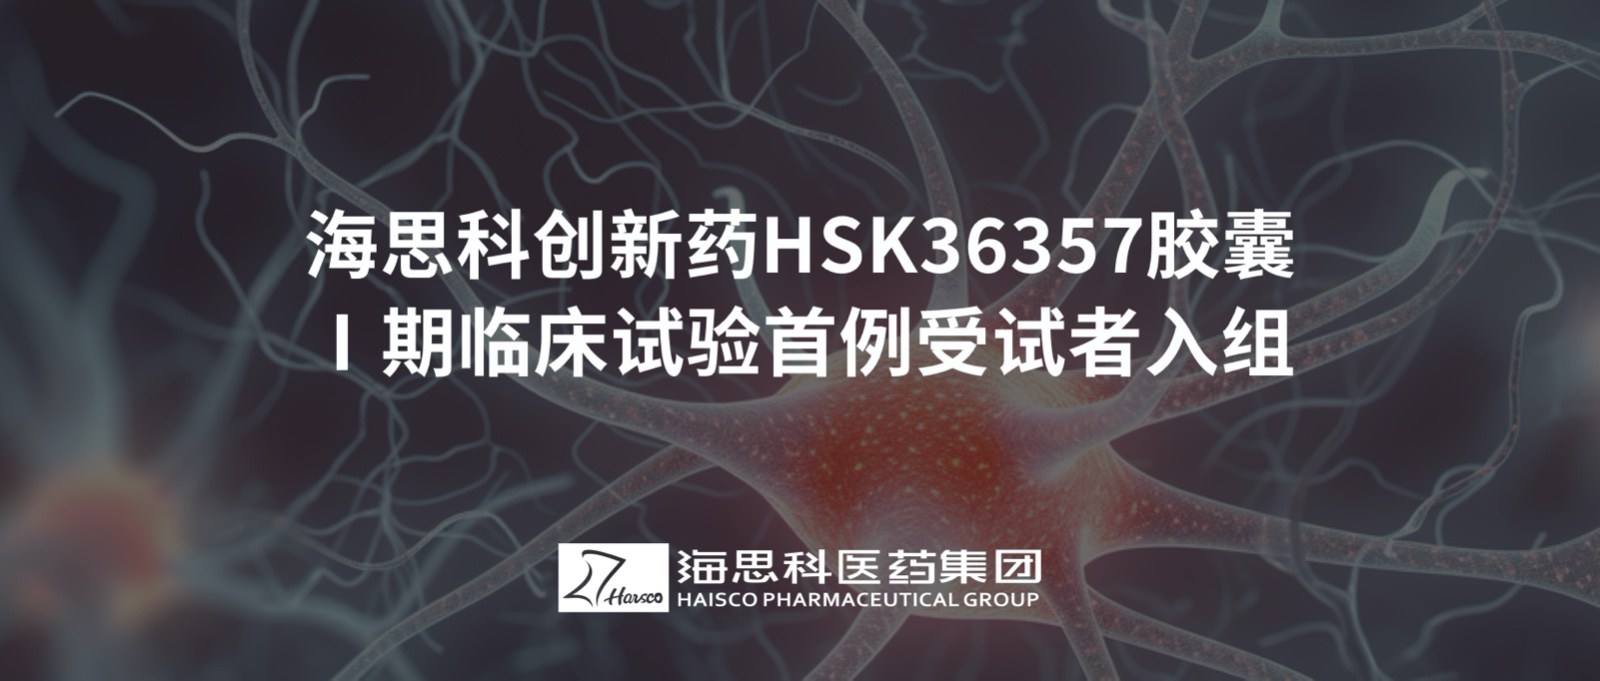 新葡的京集团8814创新药HSK36357胶囊Ⅰ期临床试验首例受试者入组